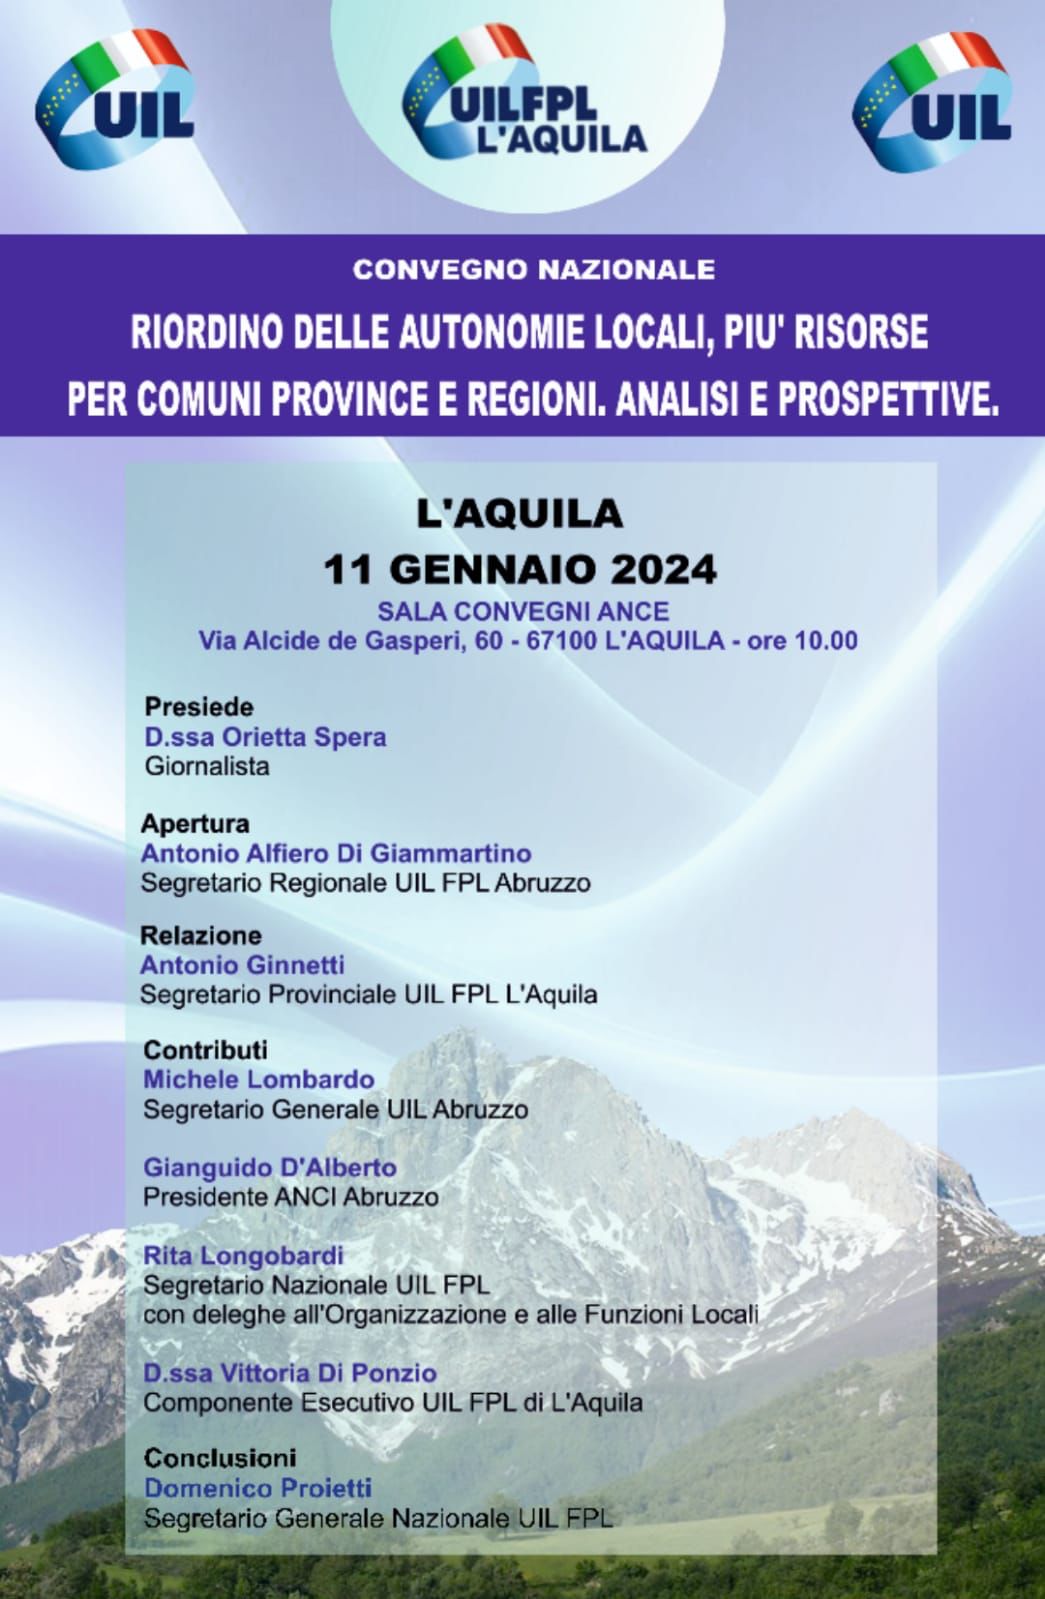 UIL Abruzzo. L’Aquila:  convegno nazionale sul “Riordino delle autonomie locali”